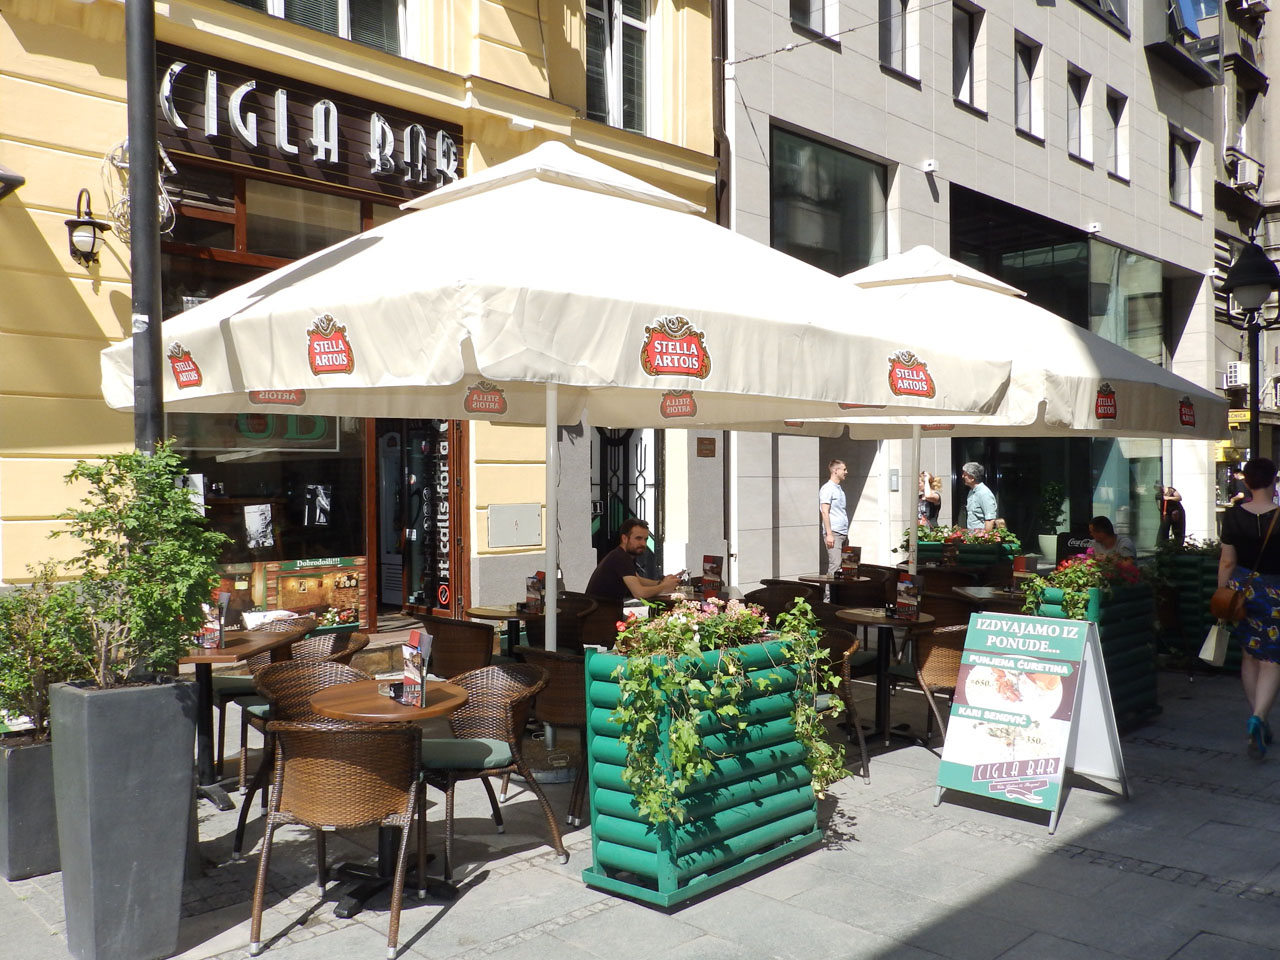 CIGLA BAR Pubs Belgrade - Photo 3